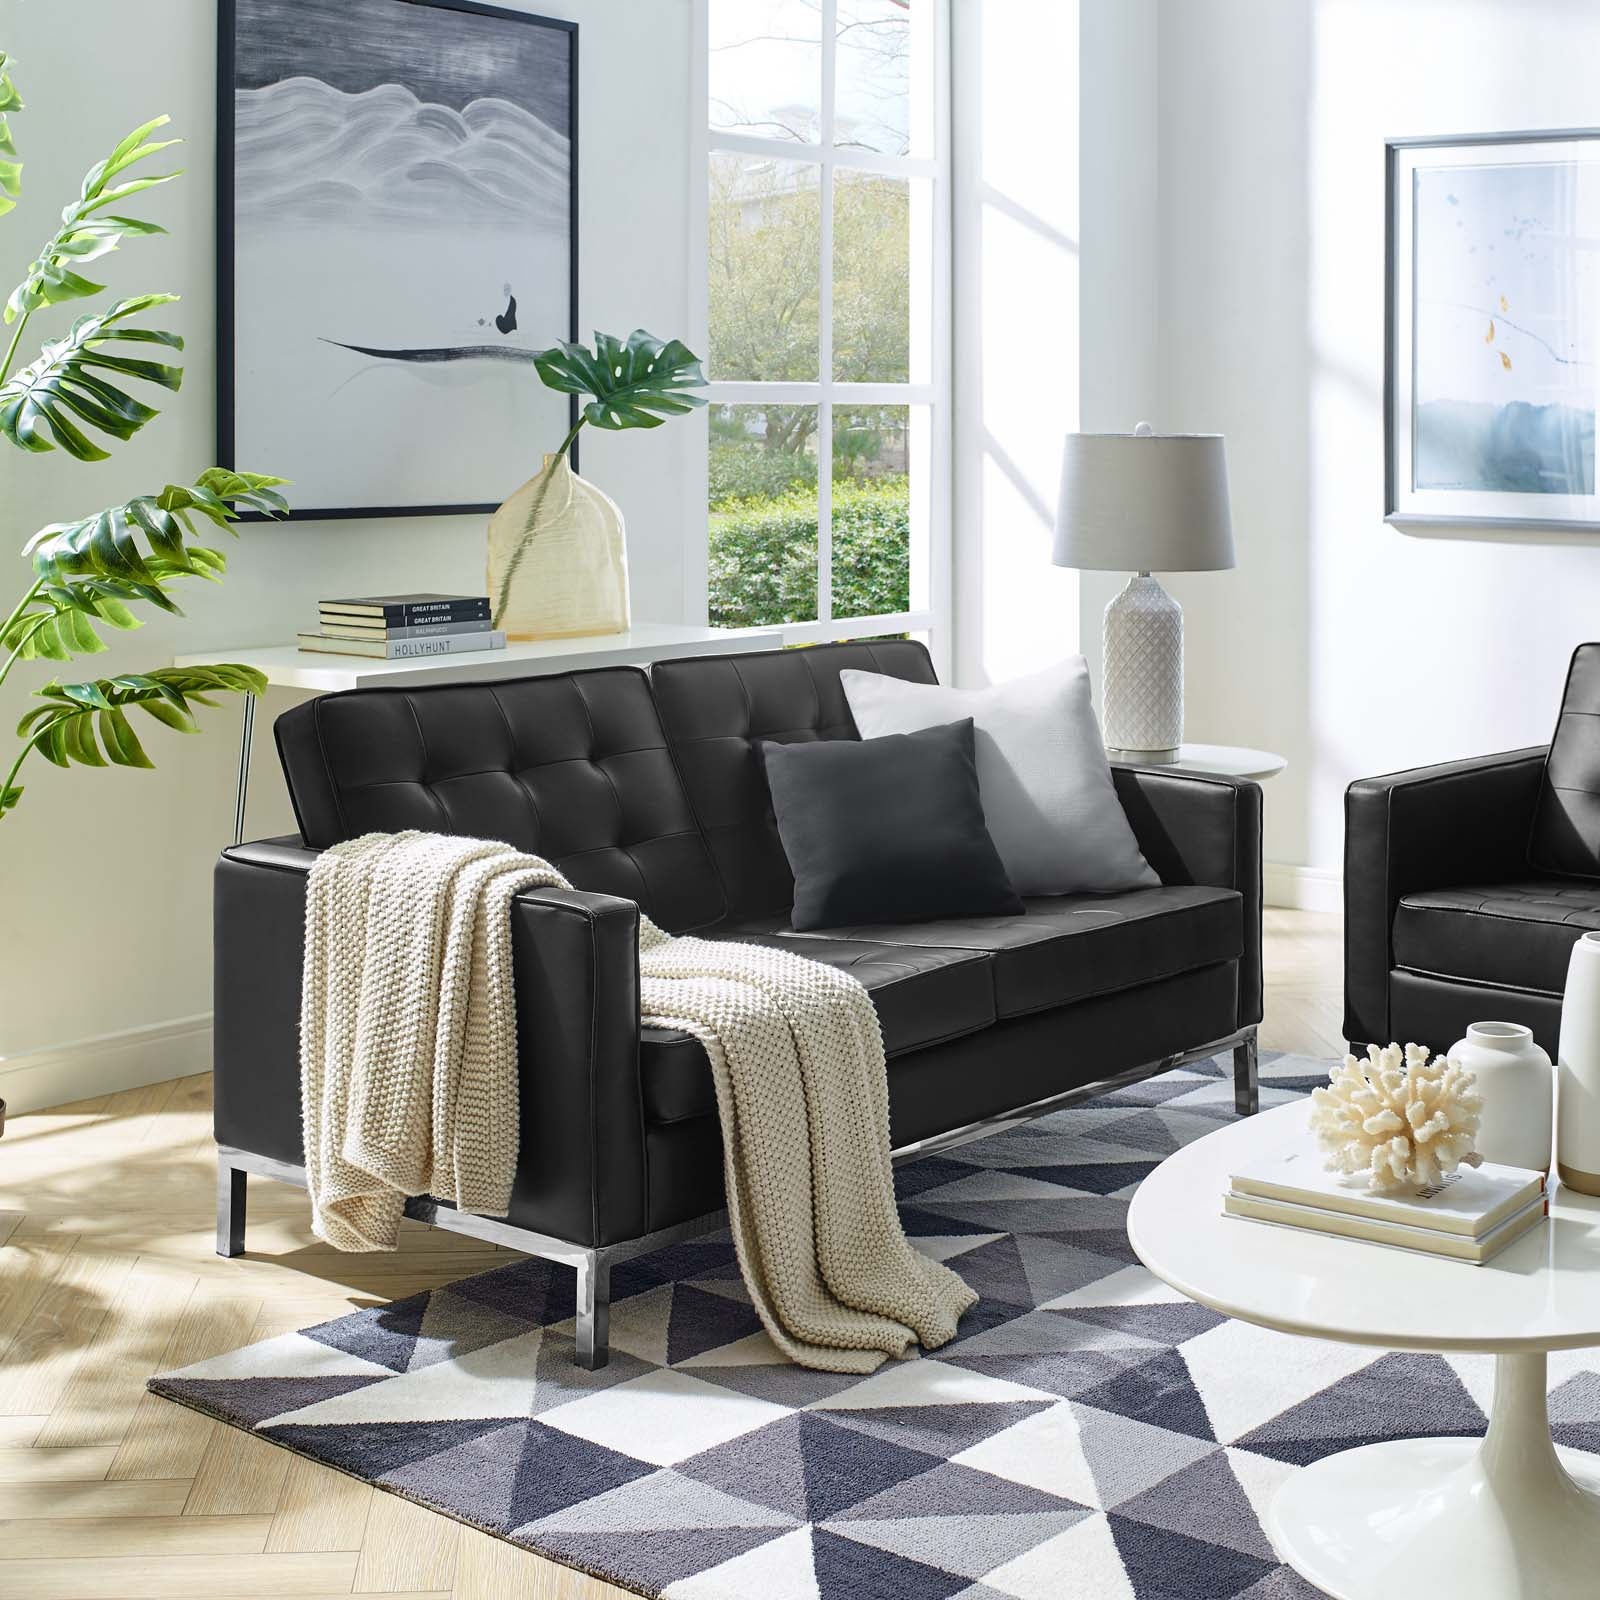 Sofá de dos plazas capitoné tapizado de piel sintética negra Davoli en una sala de estar.